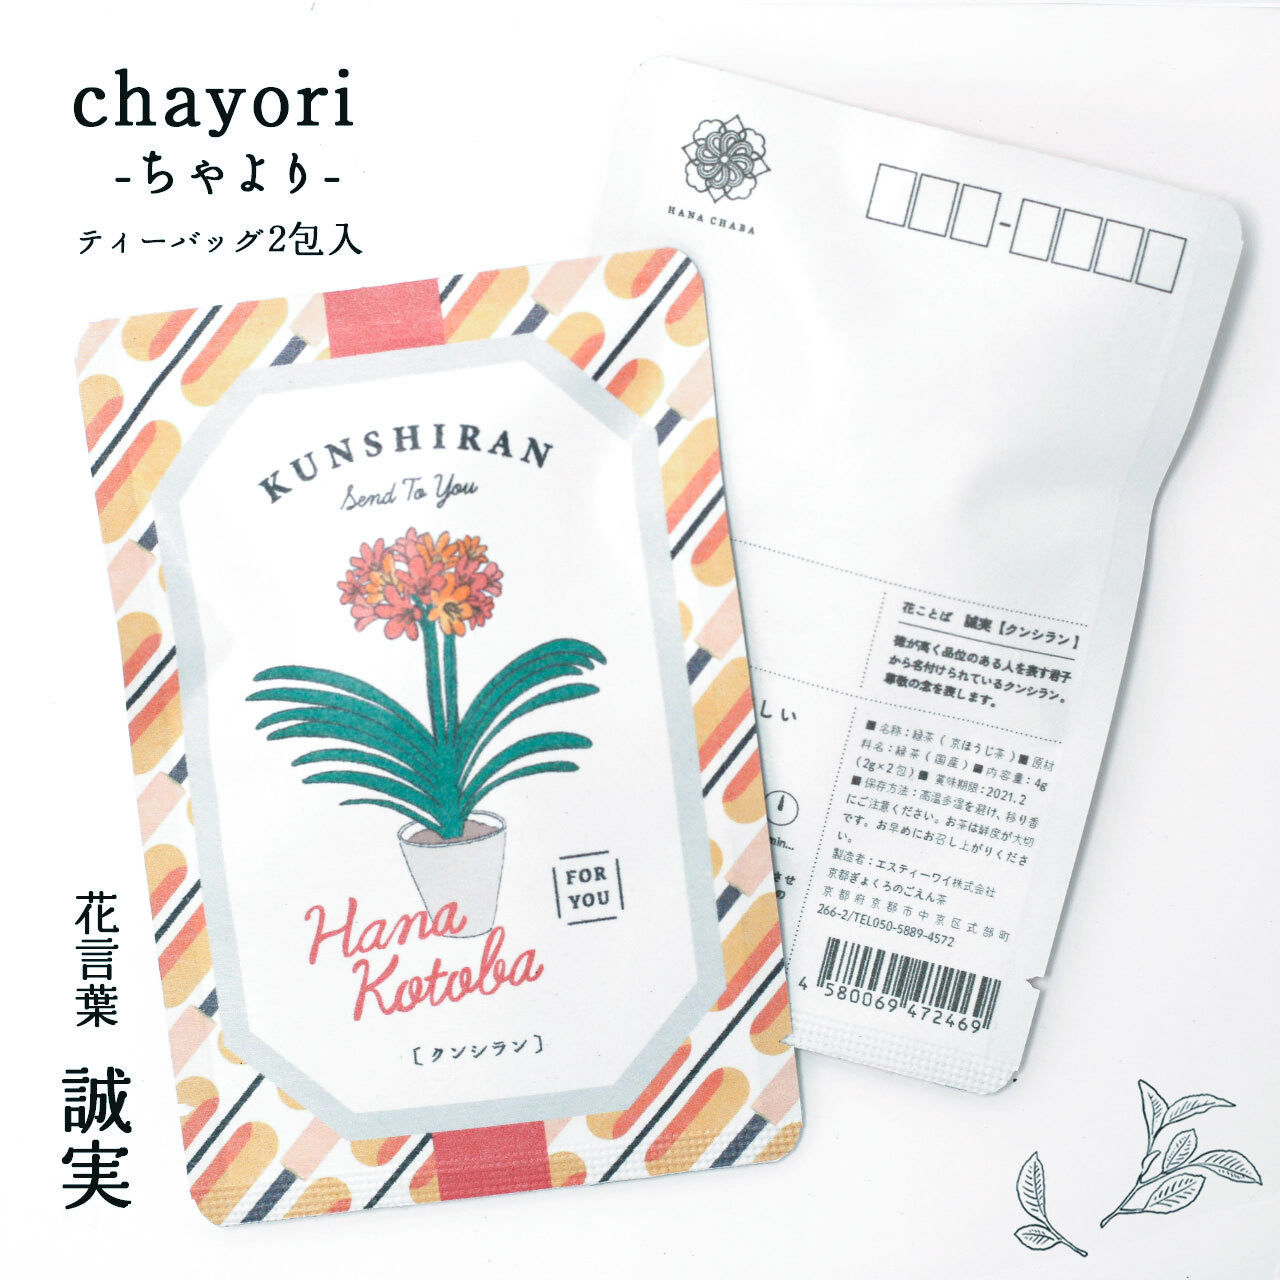 クンシラン Chayori 花言葉シリーズ ほうじ茶ティーバッグ2包入 お茶入りポストカード 京都ぎょくろのごえん茶 おいしいたのしいお茶ギフトをお届けいたします